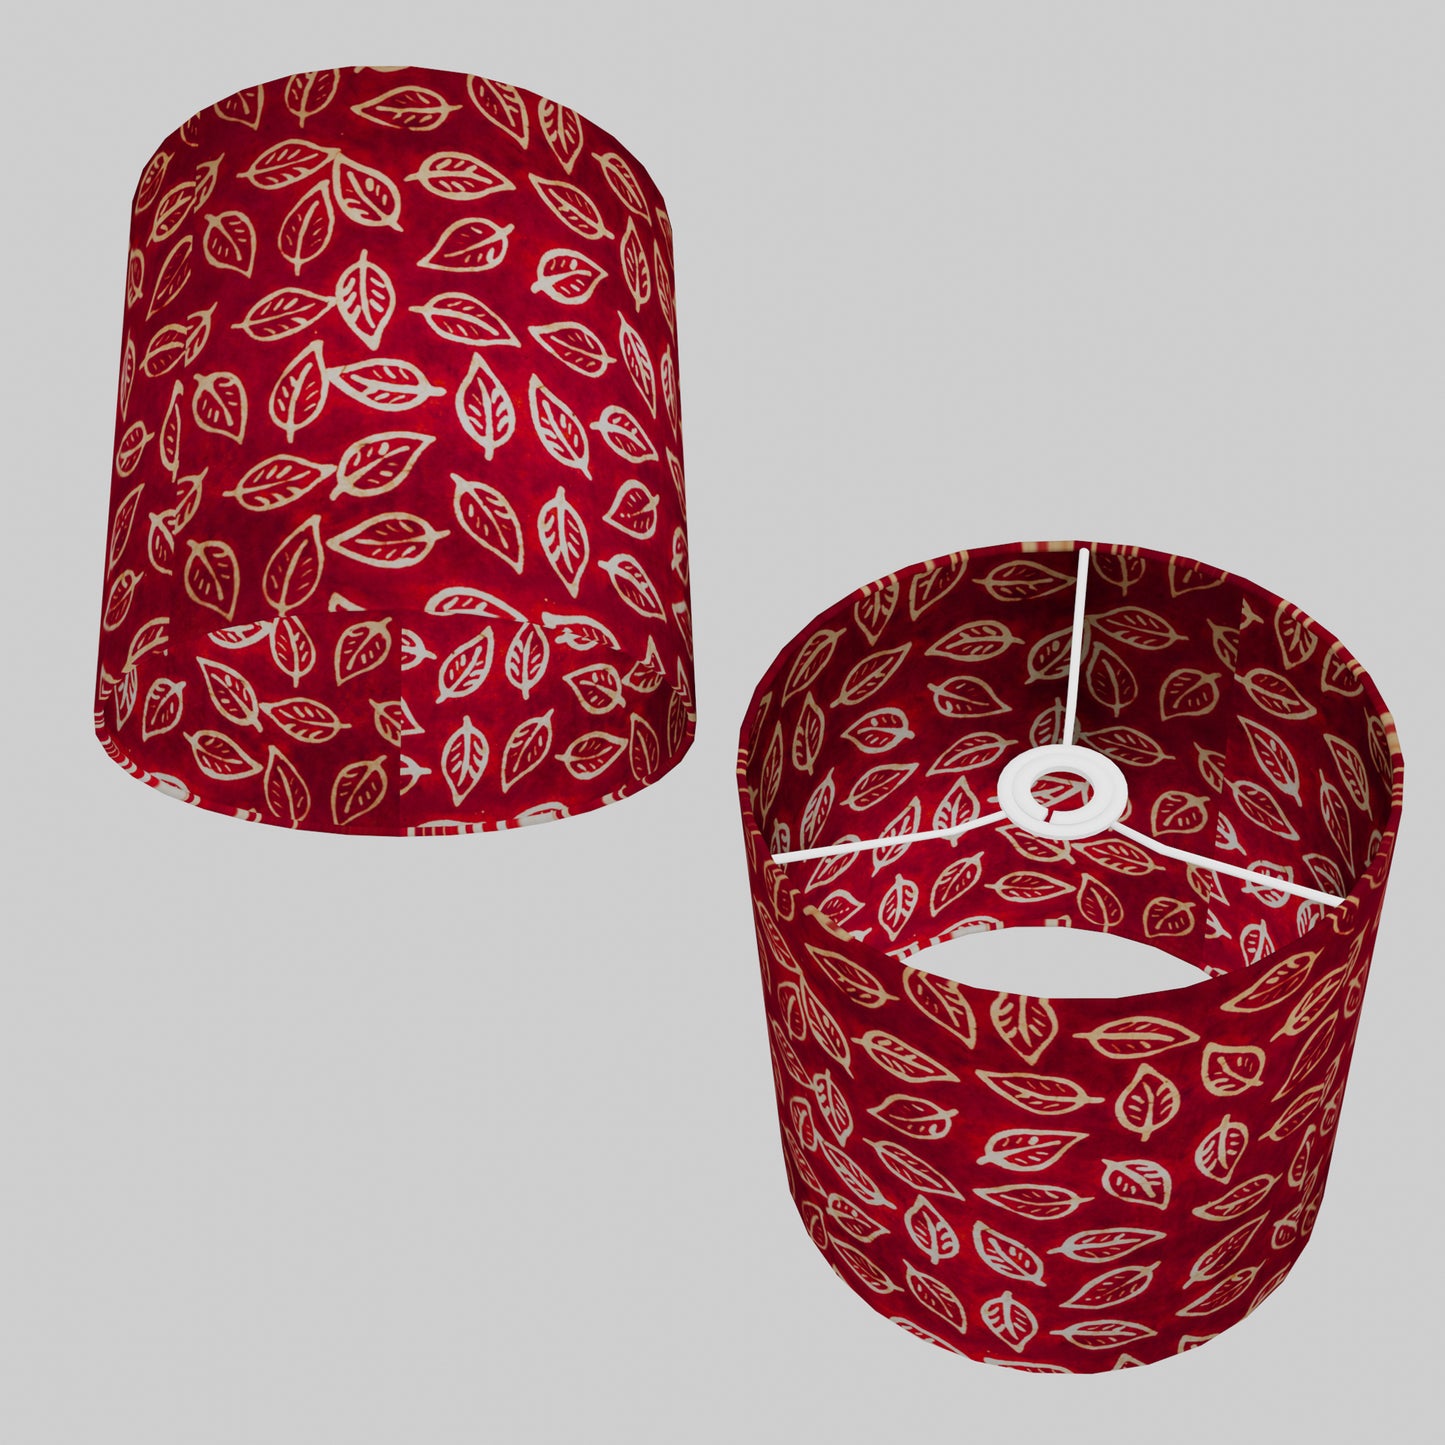 Drum Lamp Shade - P30 - Batik Leaf on Red, 25cm x 25cm